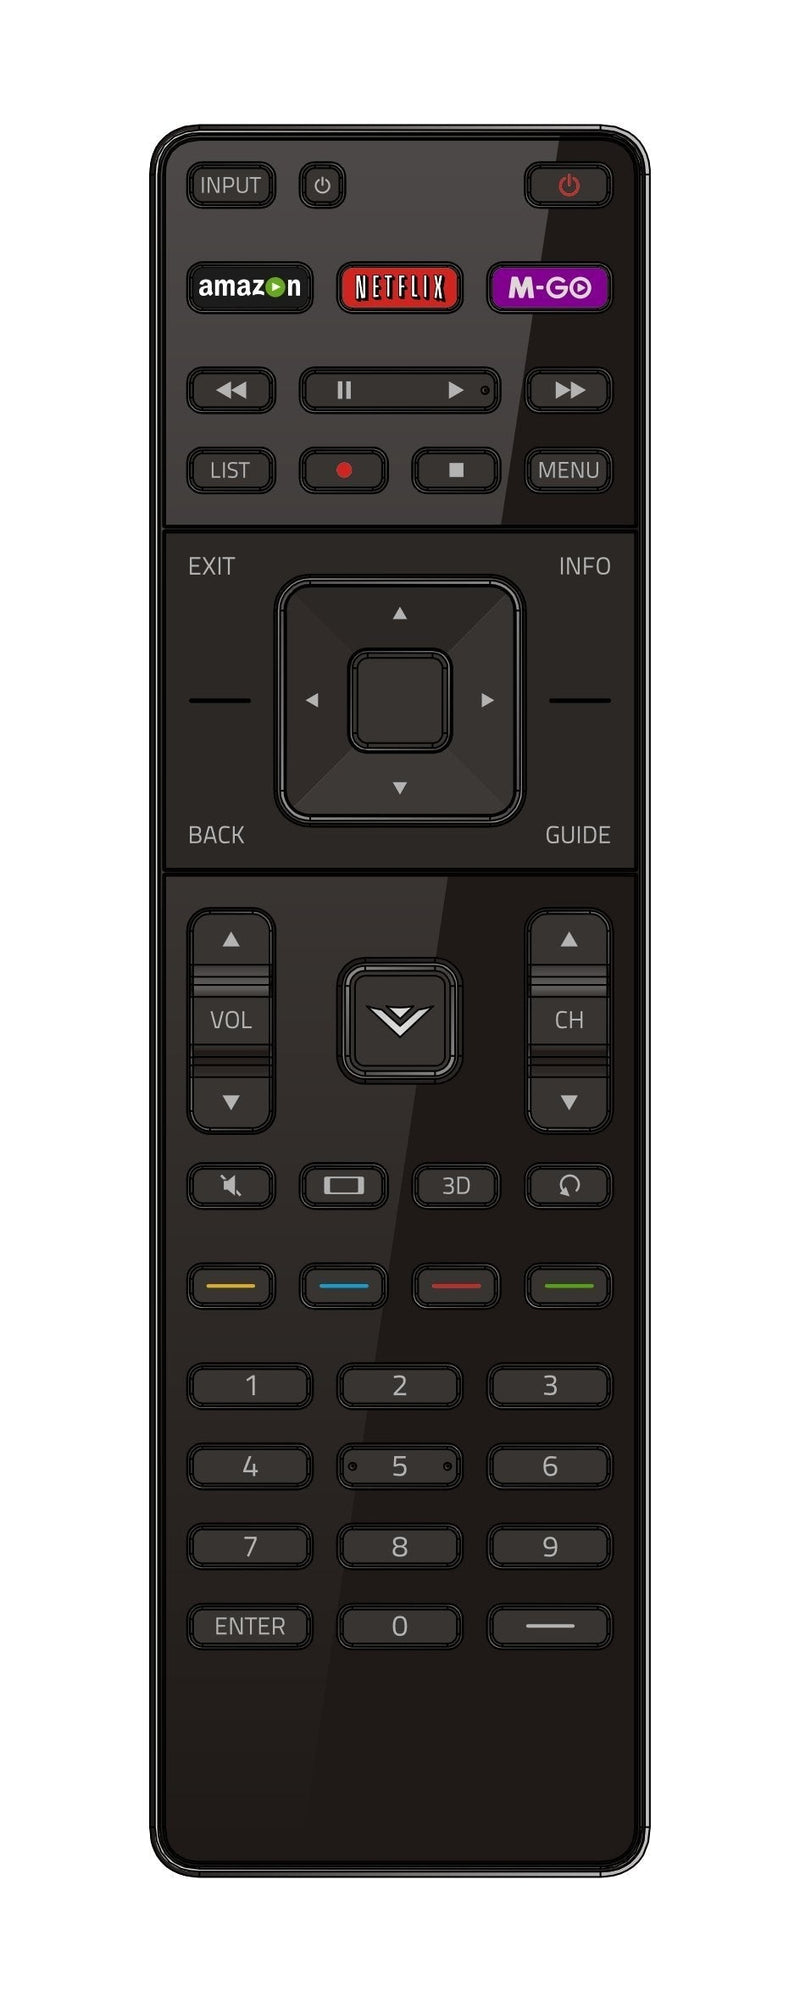 Brand New Genuine VIZIO smart TV remote XRT510 for all VIZIO M-series Smart internet App TV such as: M701D-A3R M651D-A2R M601D-A3R M321i-A2 M321iA2 M401i-A3 M401iA3 M471i-A2 M471iA2 M501D-A2 M501DA2 M501D-A2R M501DA2R M551D-A2 M551DA2 M551D-A2R M551DA2... - LeoForward Australia